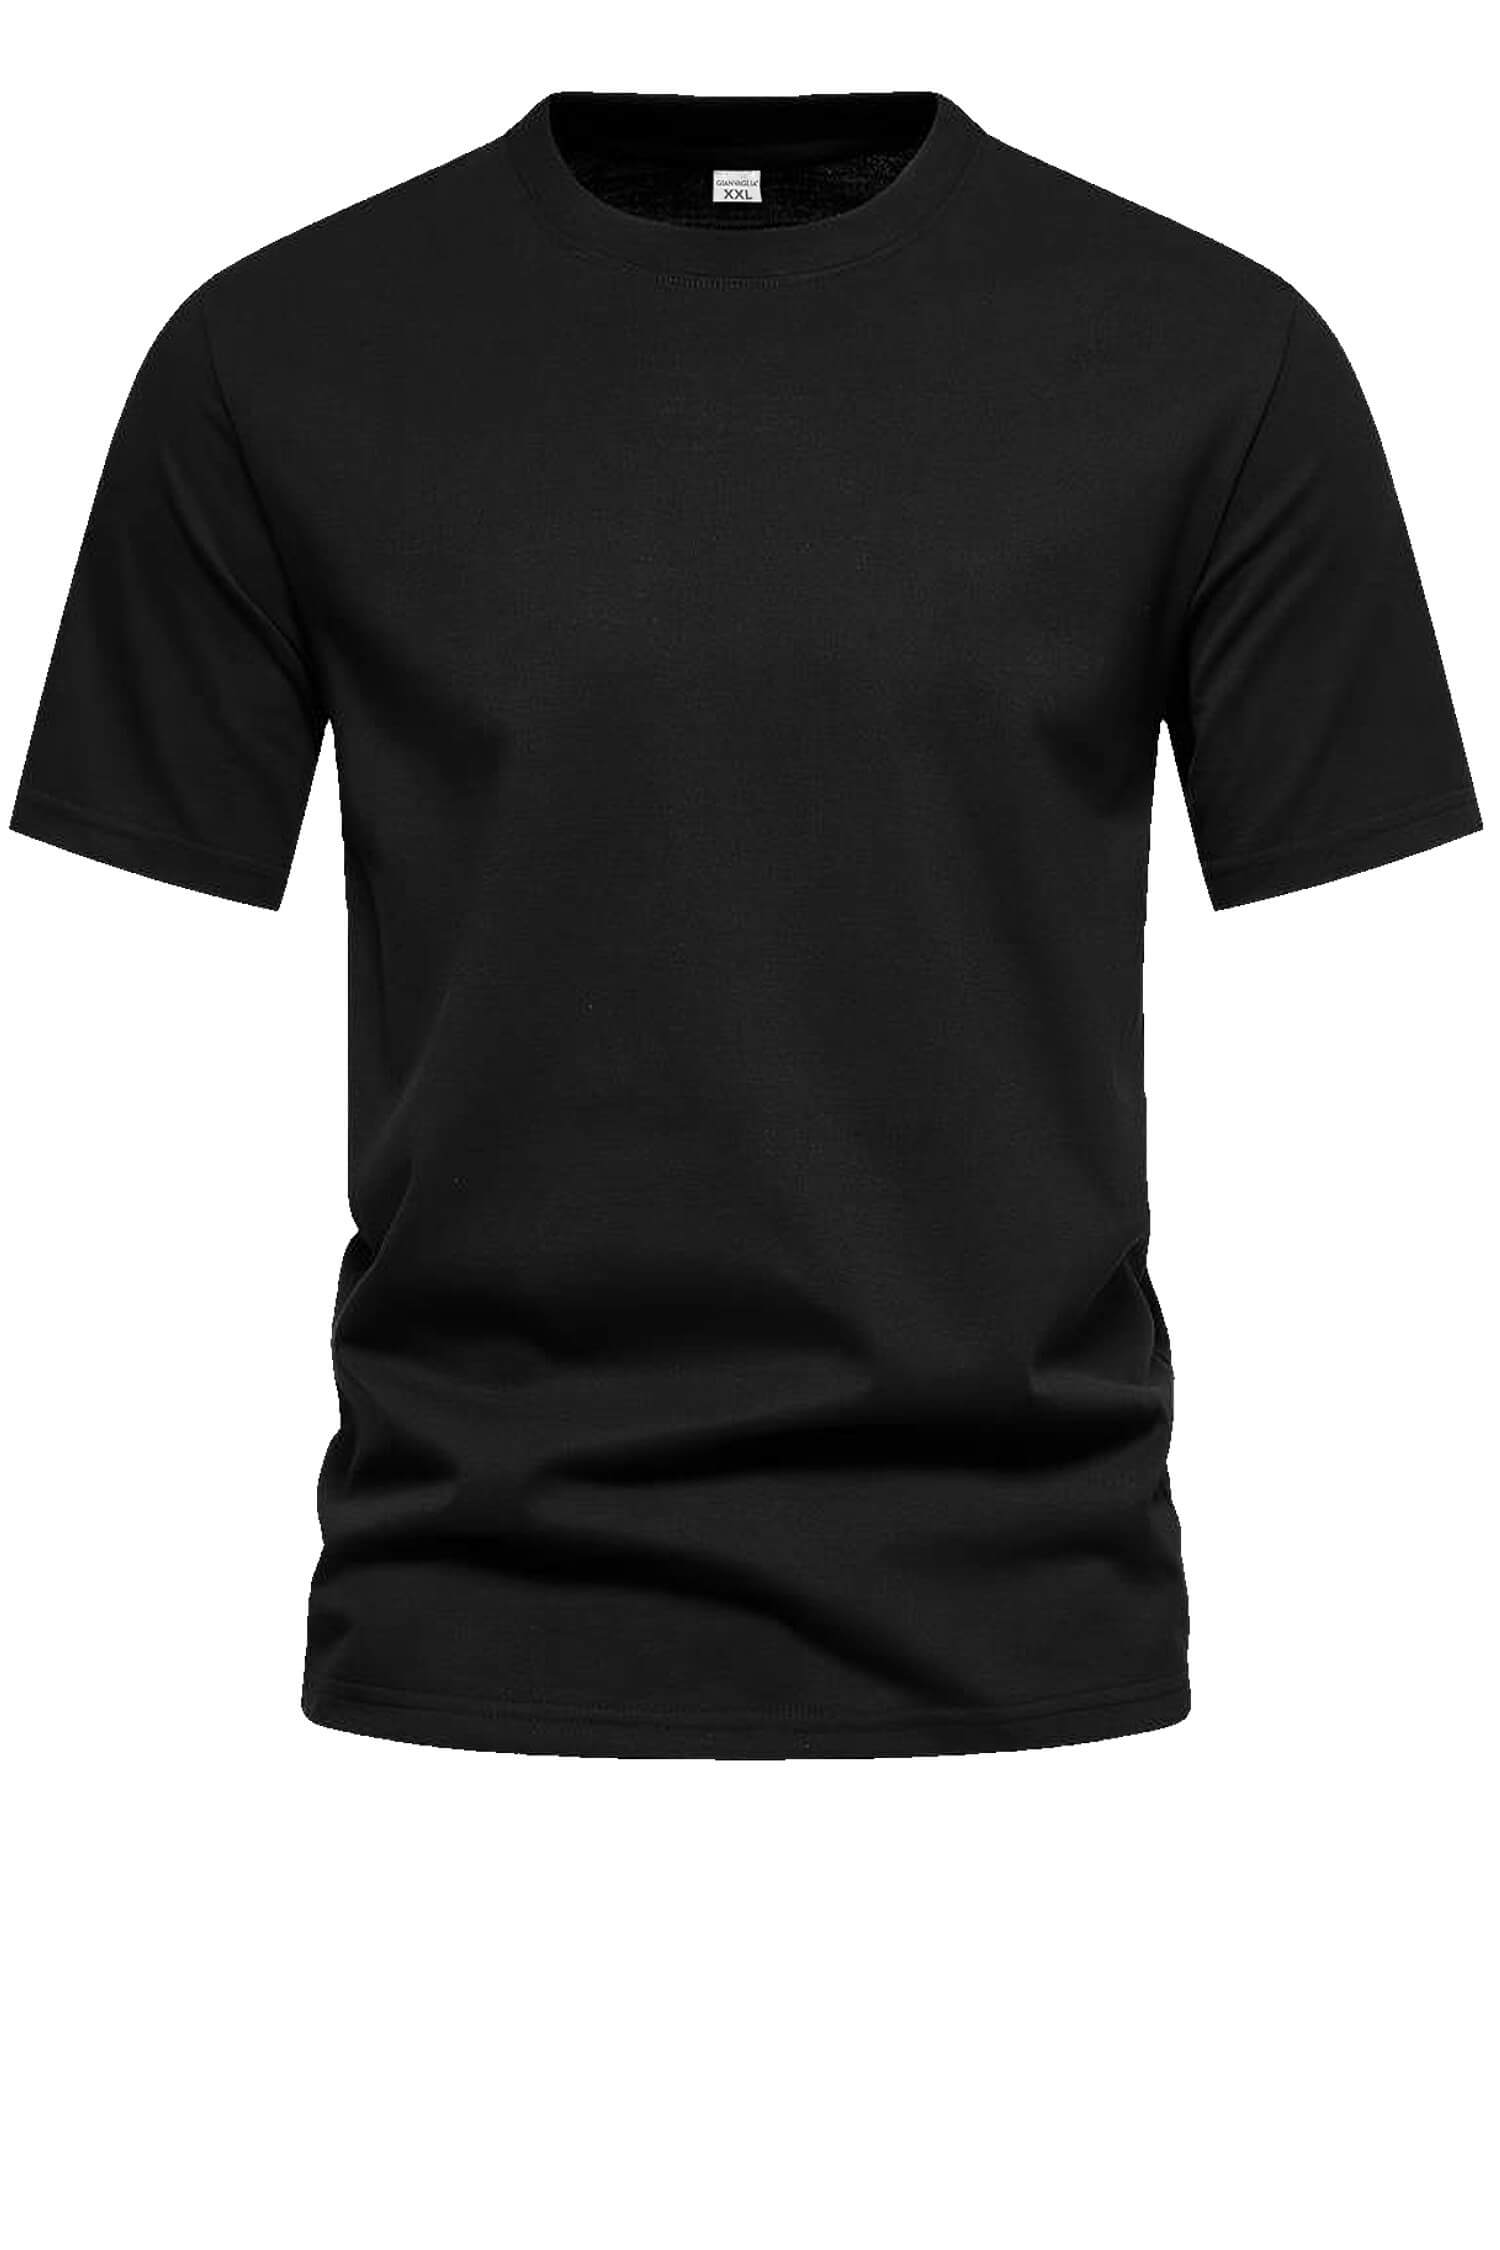 Bořek pánské klasické tričko TS-1006 L černá